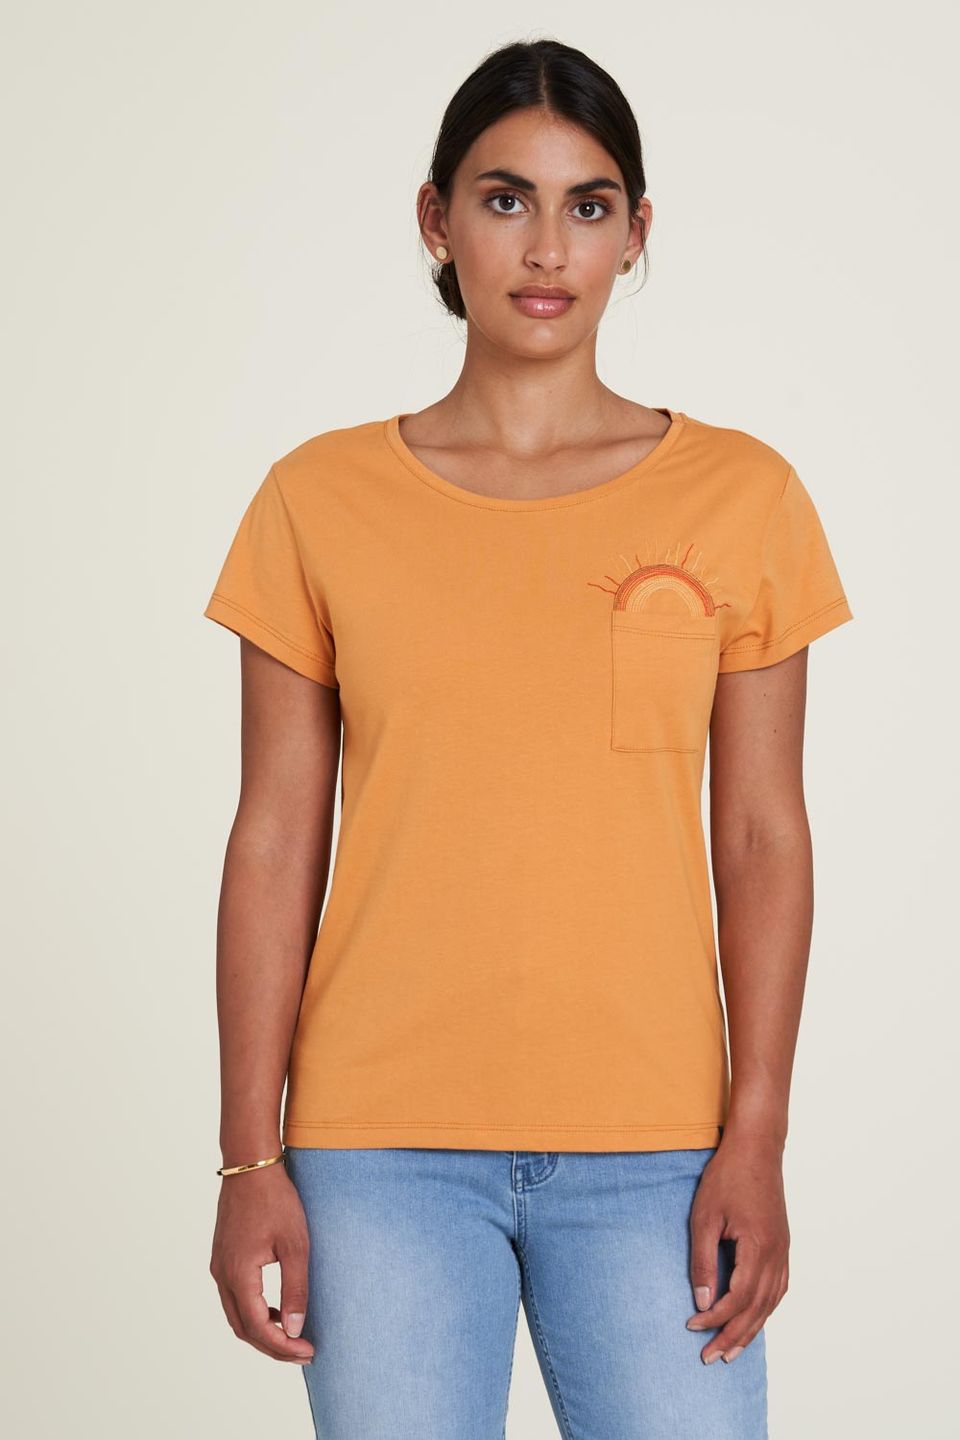 T-Shirt Jersey sundial von Tranquillo